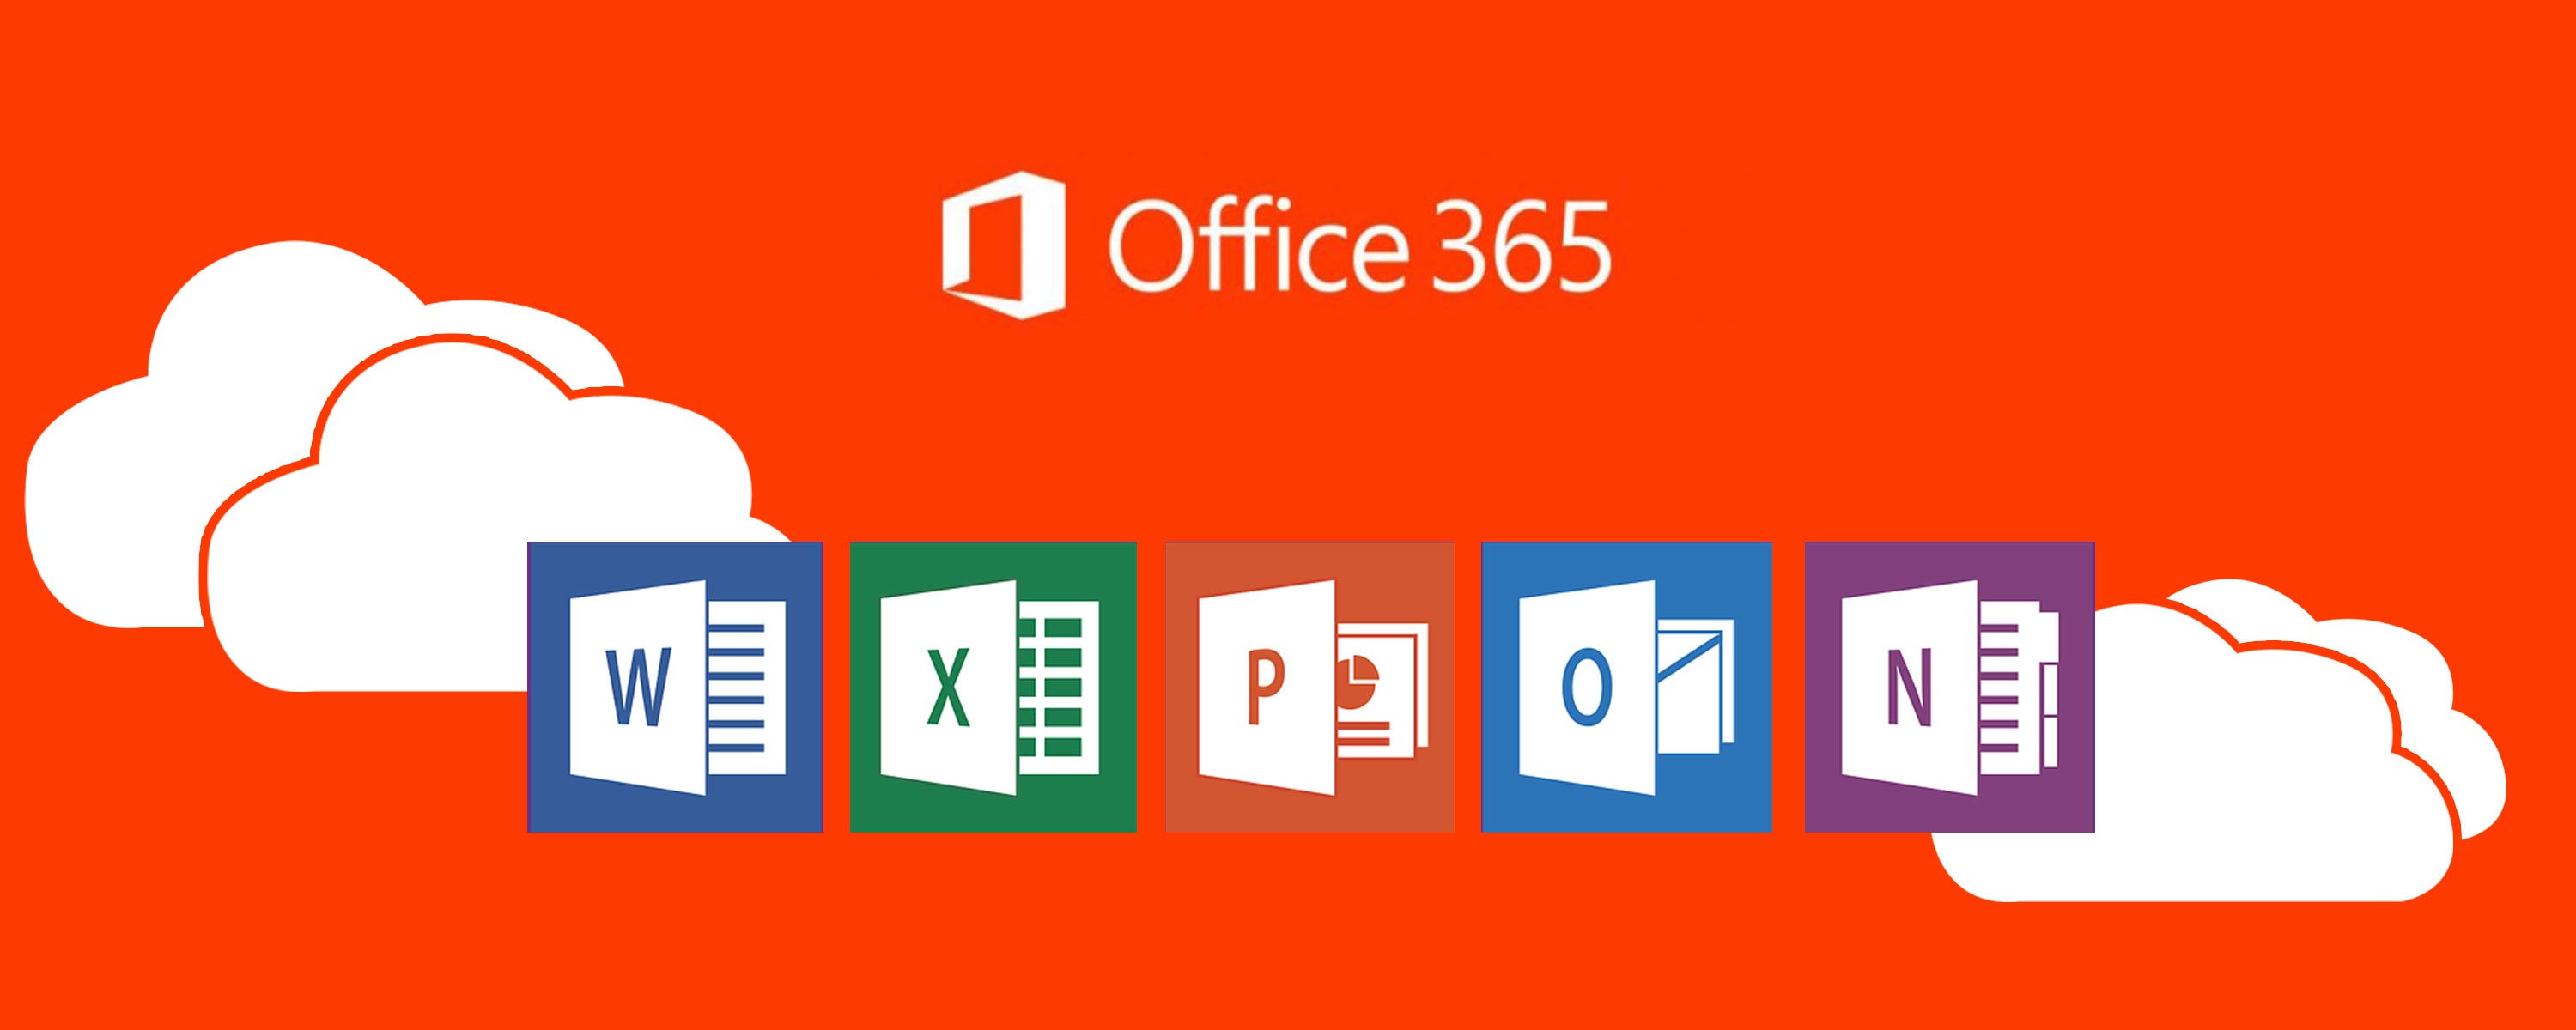 Office 365. Платформа офис 365. Значок офис 365. Офис 365 про плюс. Office 365 tool